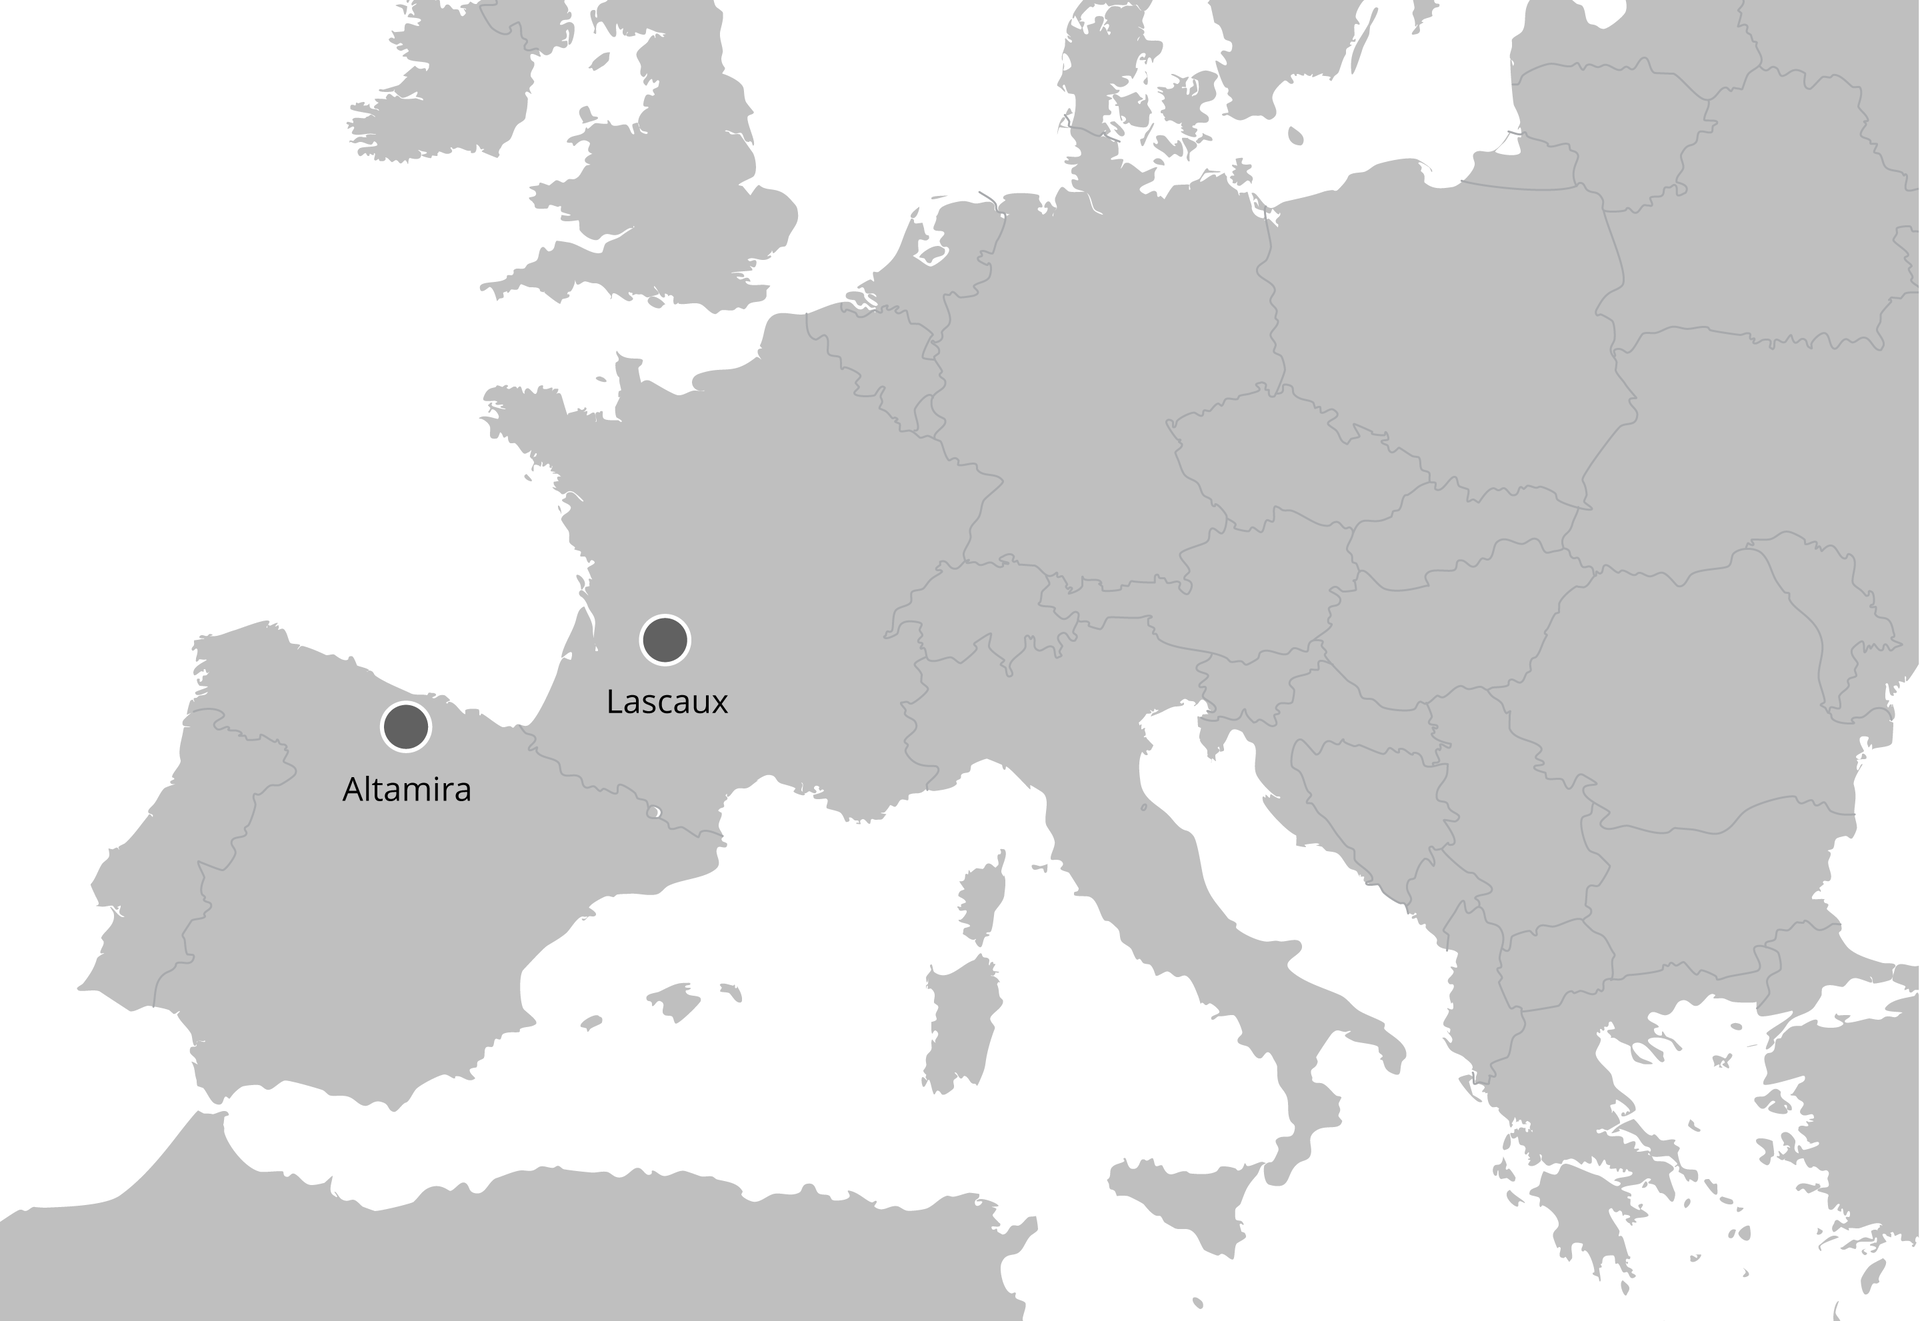 Mapa konturowa Europy z zaznaczeniem lokalizacji jaskiń Lascaux i Altamiry. Lascaux znajduje się na terenie współczesnej Francji, zaś Altamira - Hiszpanii.